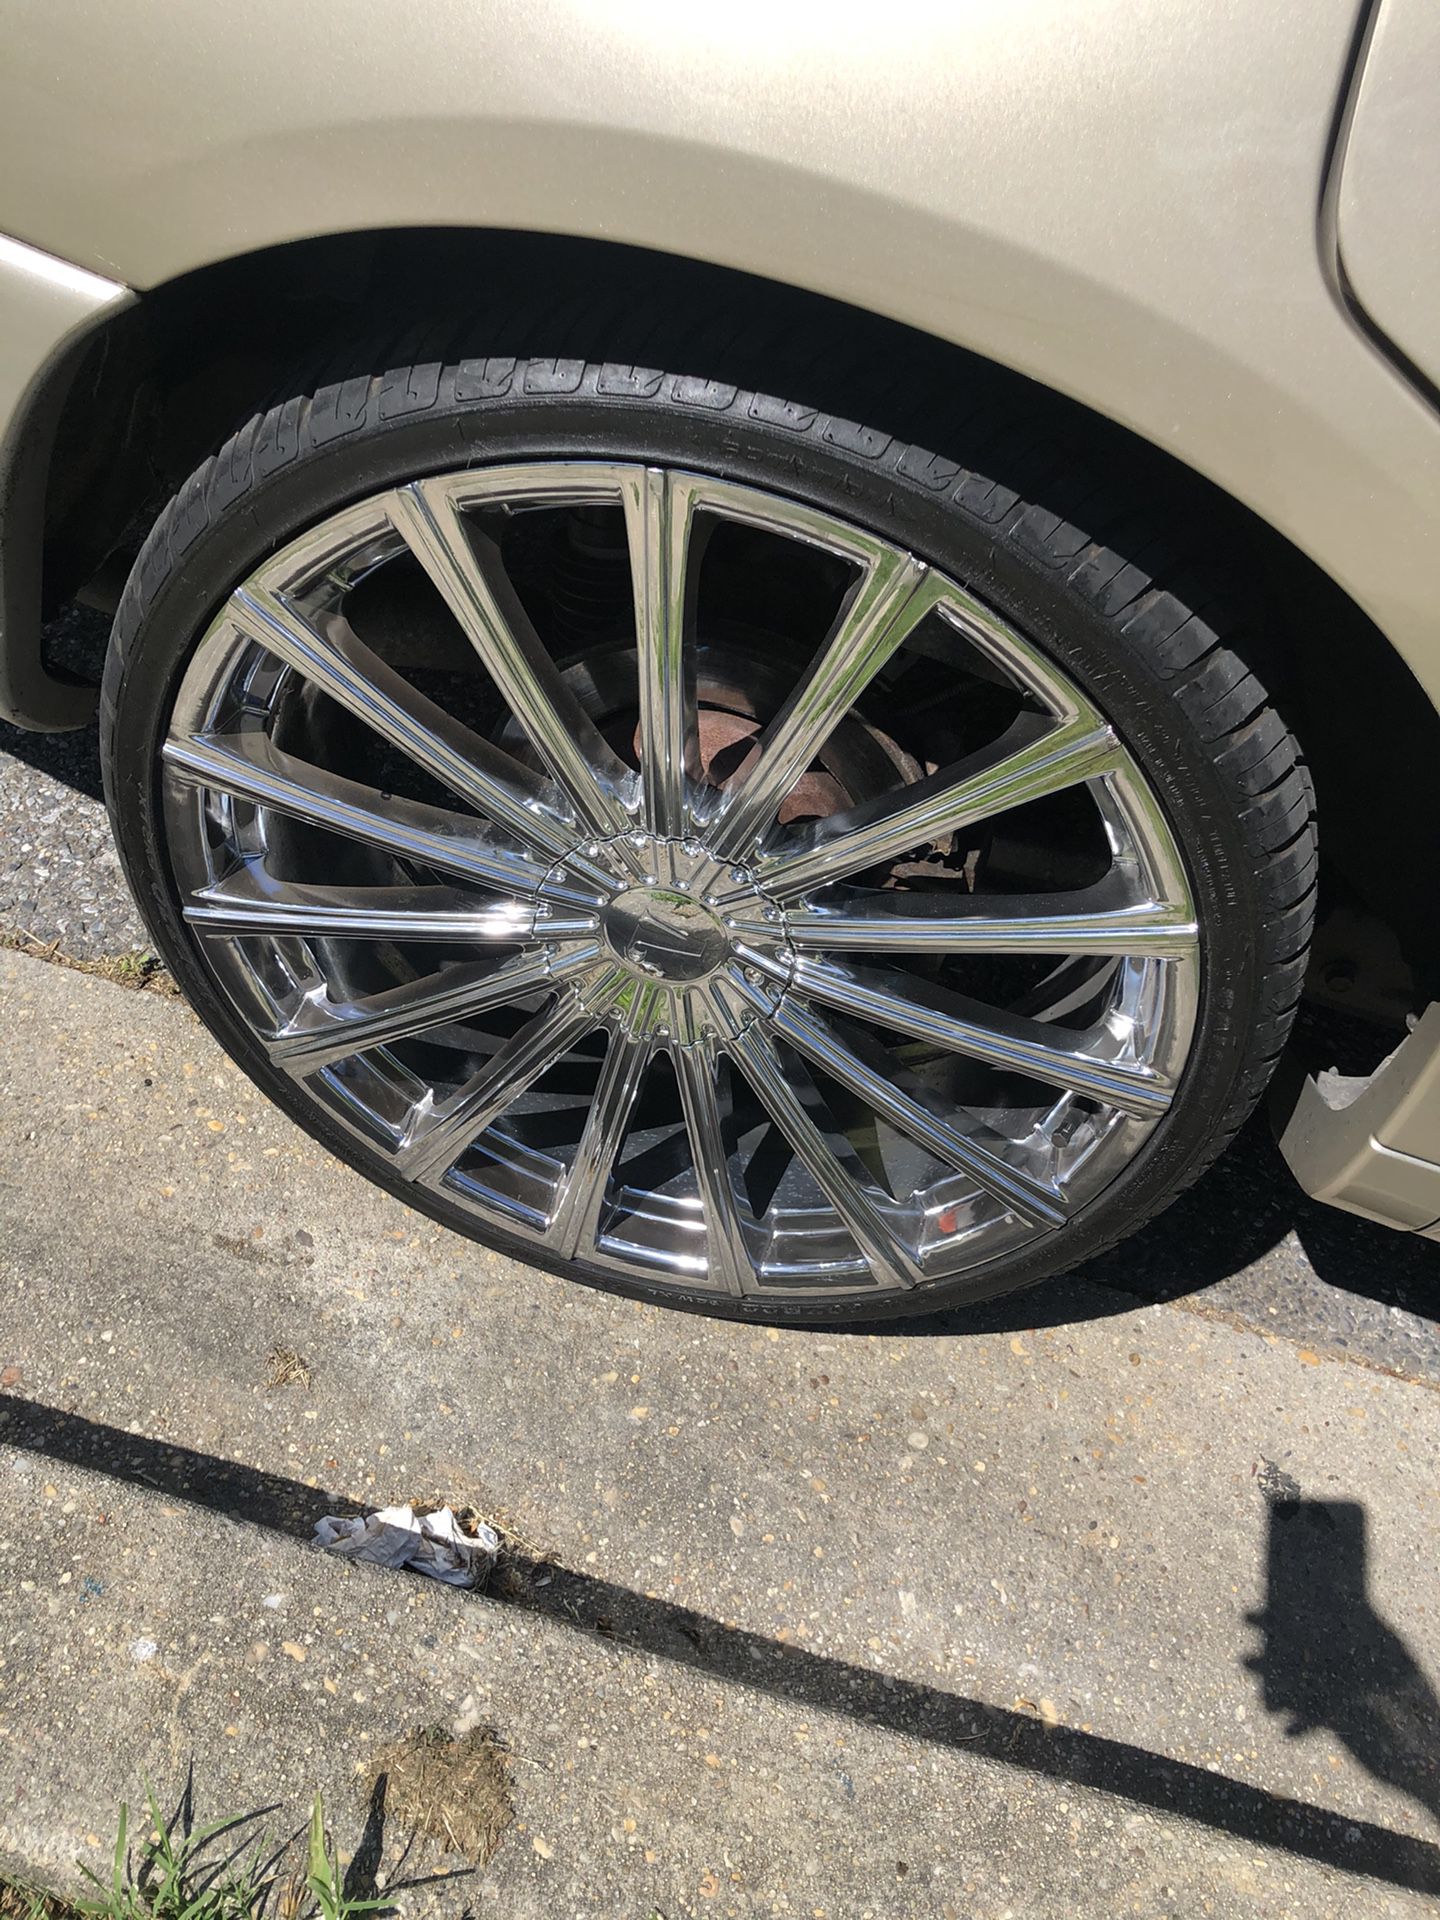 Fresh velocity 22 inch wheels